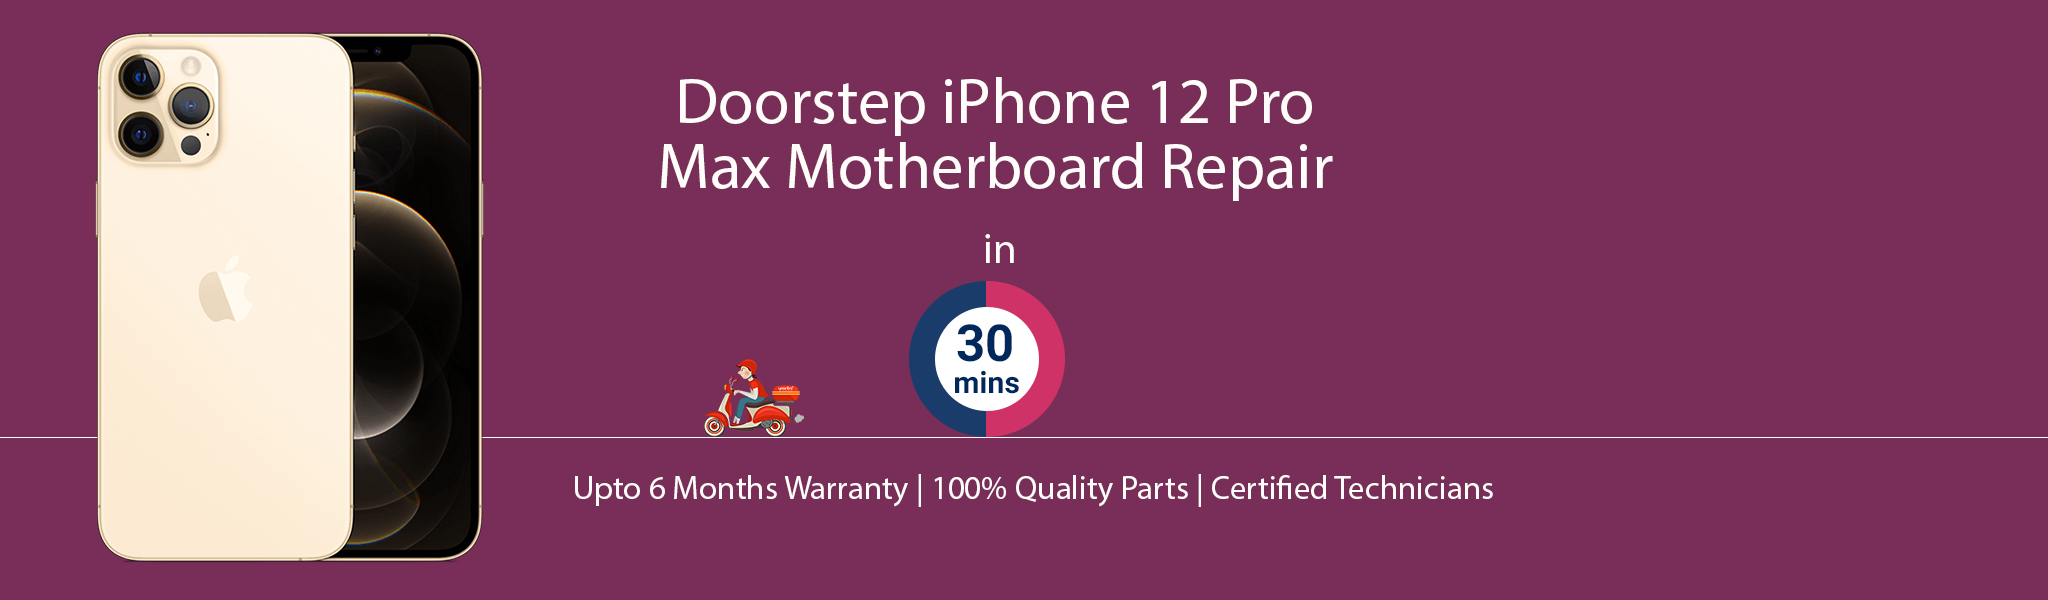 iphone-12-pro-max-motherboard-repair.jpg